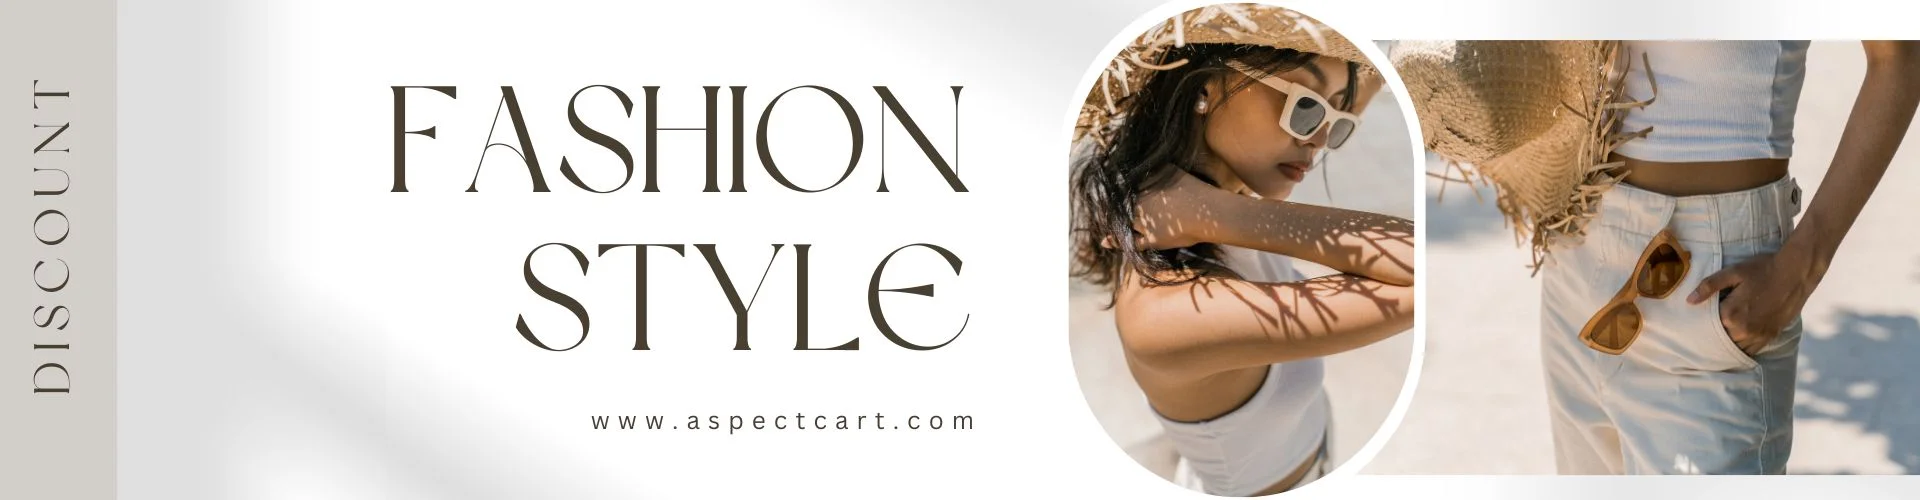 Bannerul unui magazin online de modă care prezintă haine și accesorii moderne